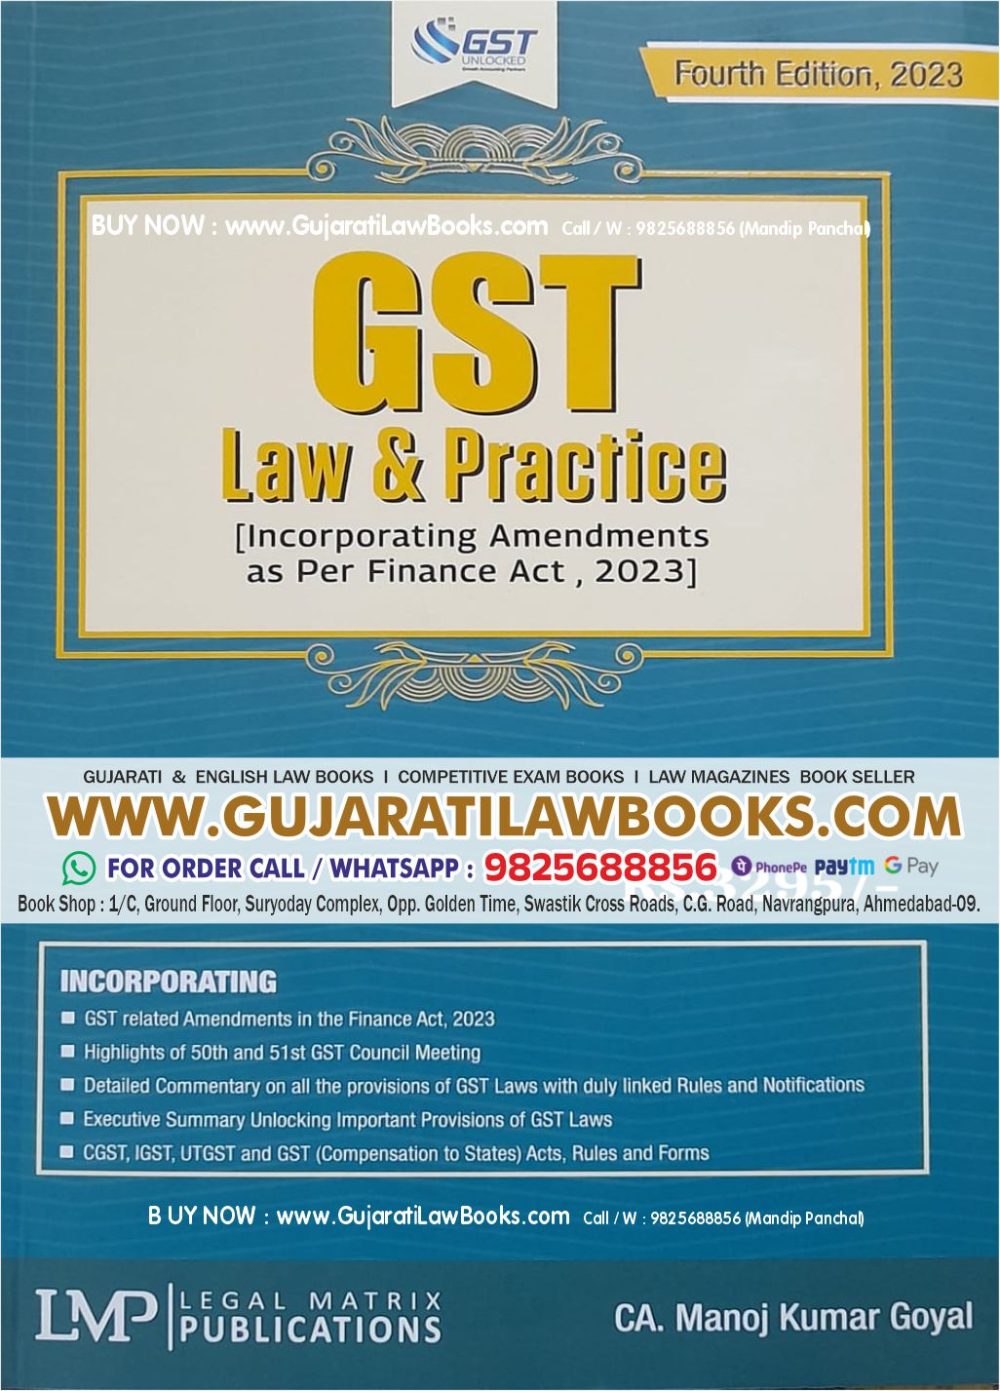 GST Law & Practice by CA Manoj Kumar Goyal - Latest 4th Edition 2023 by LMP